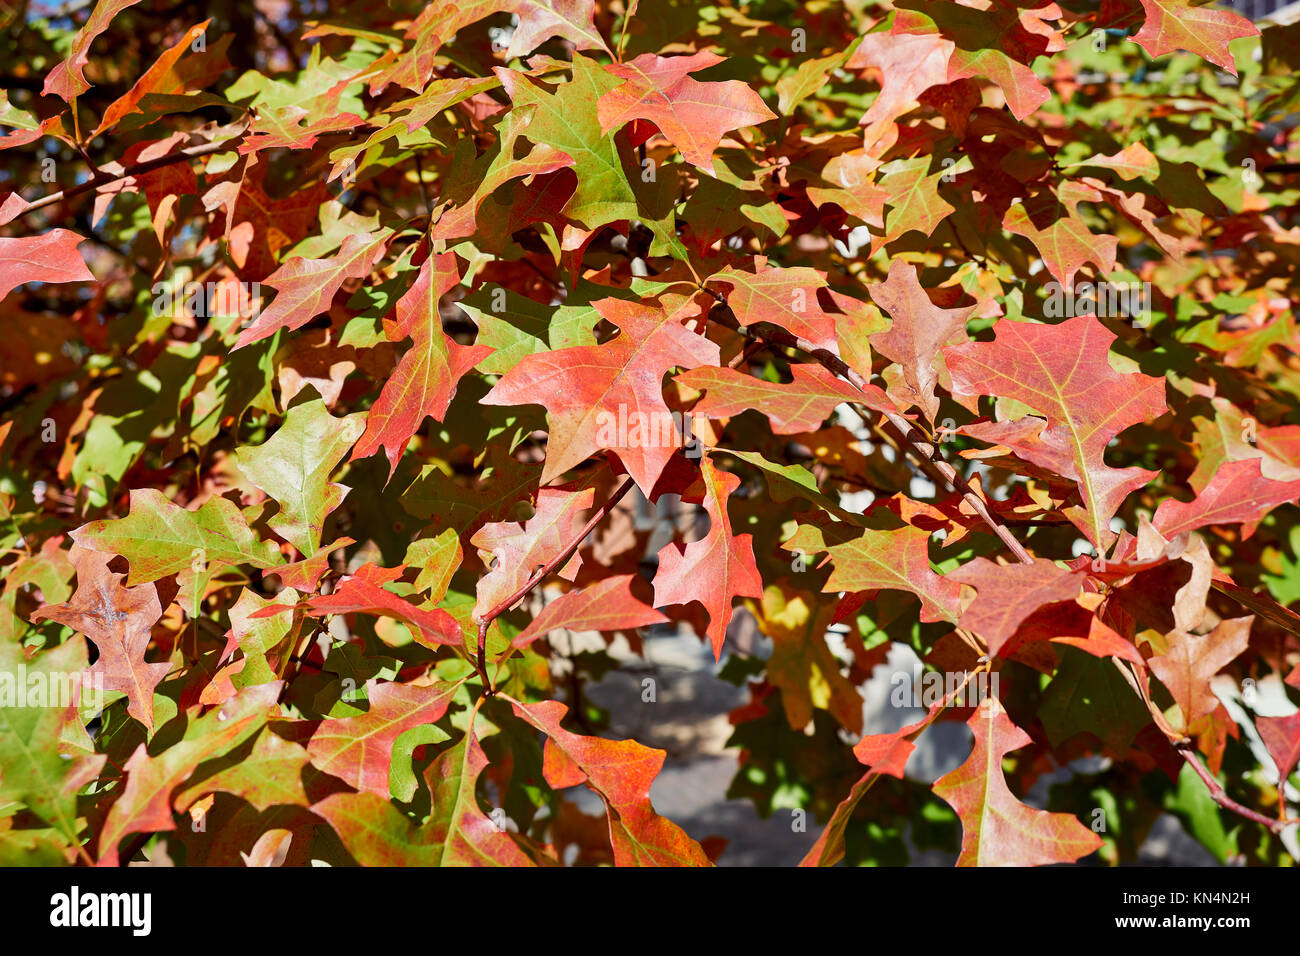 Quercus Rubra L oder Roteiche, östliche Rote Eiche Blätter gerade Drehen im Herbst oder im Herbst Jahreszeit als guten Hintergrund dienen. Stockfoto